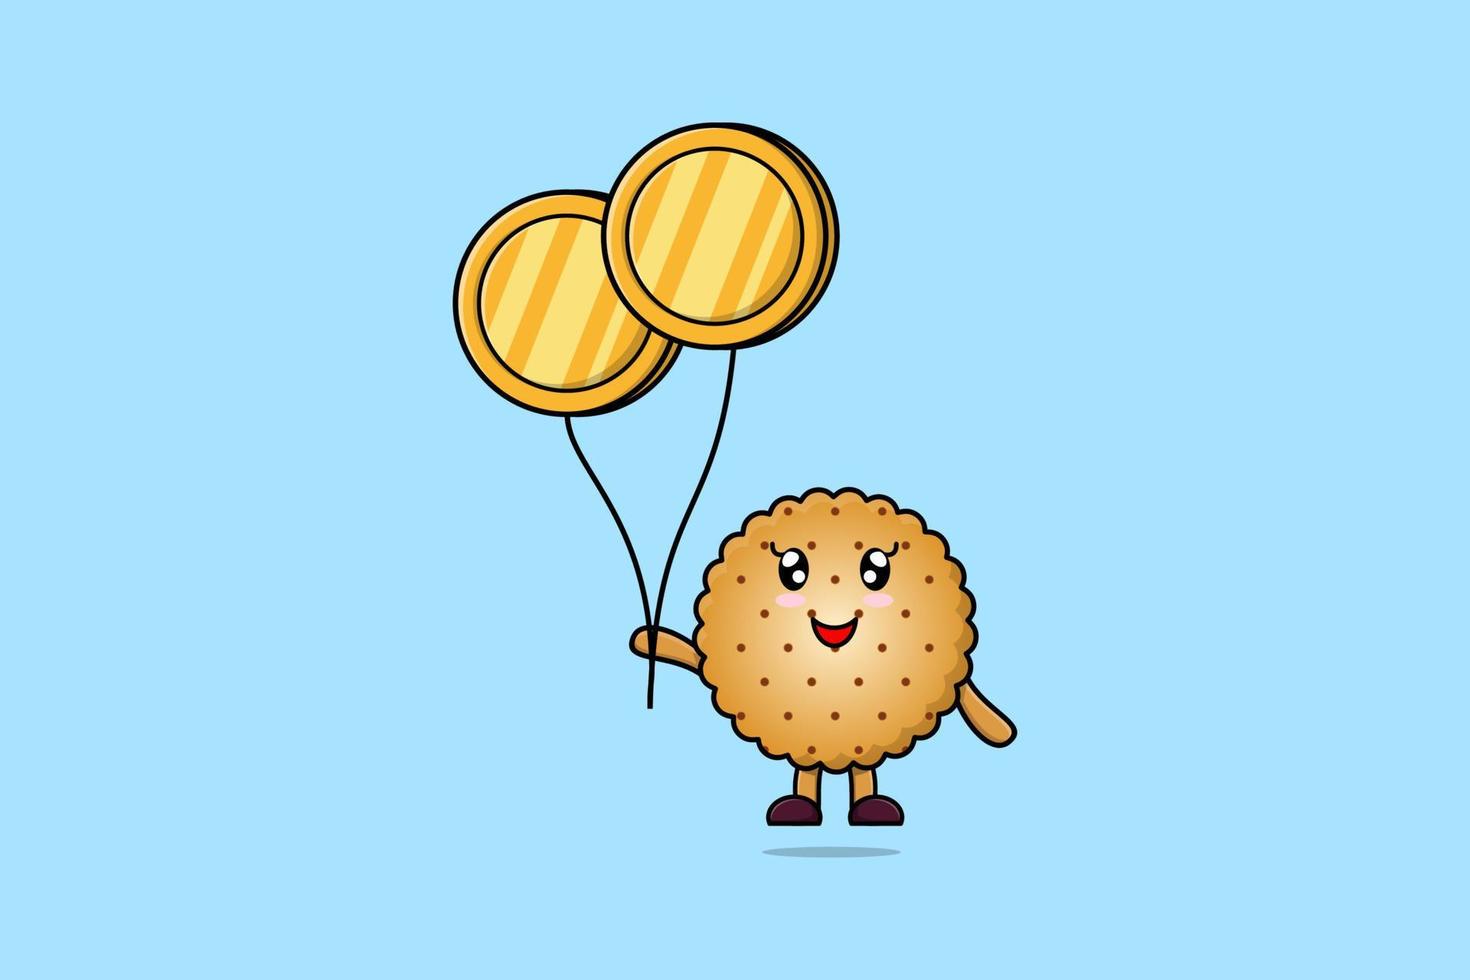 biscuits de dessin animé mignon flottant avec ballon de pièce vecteur